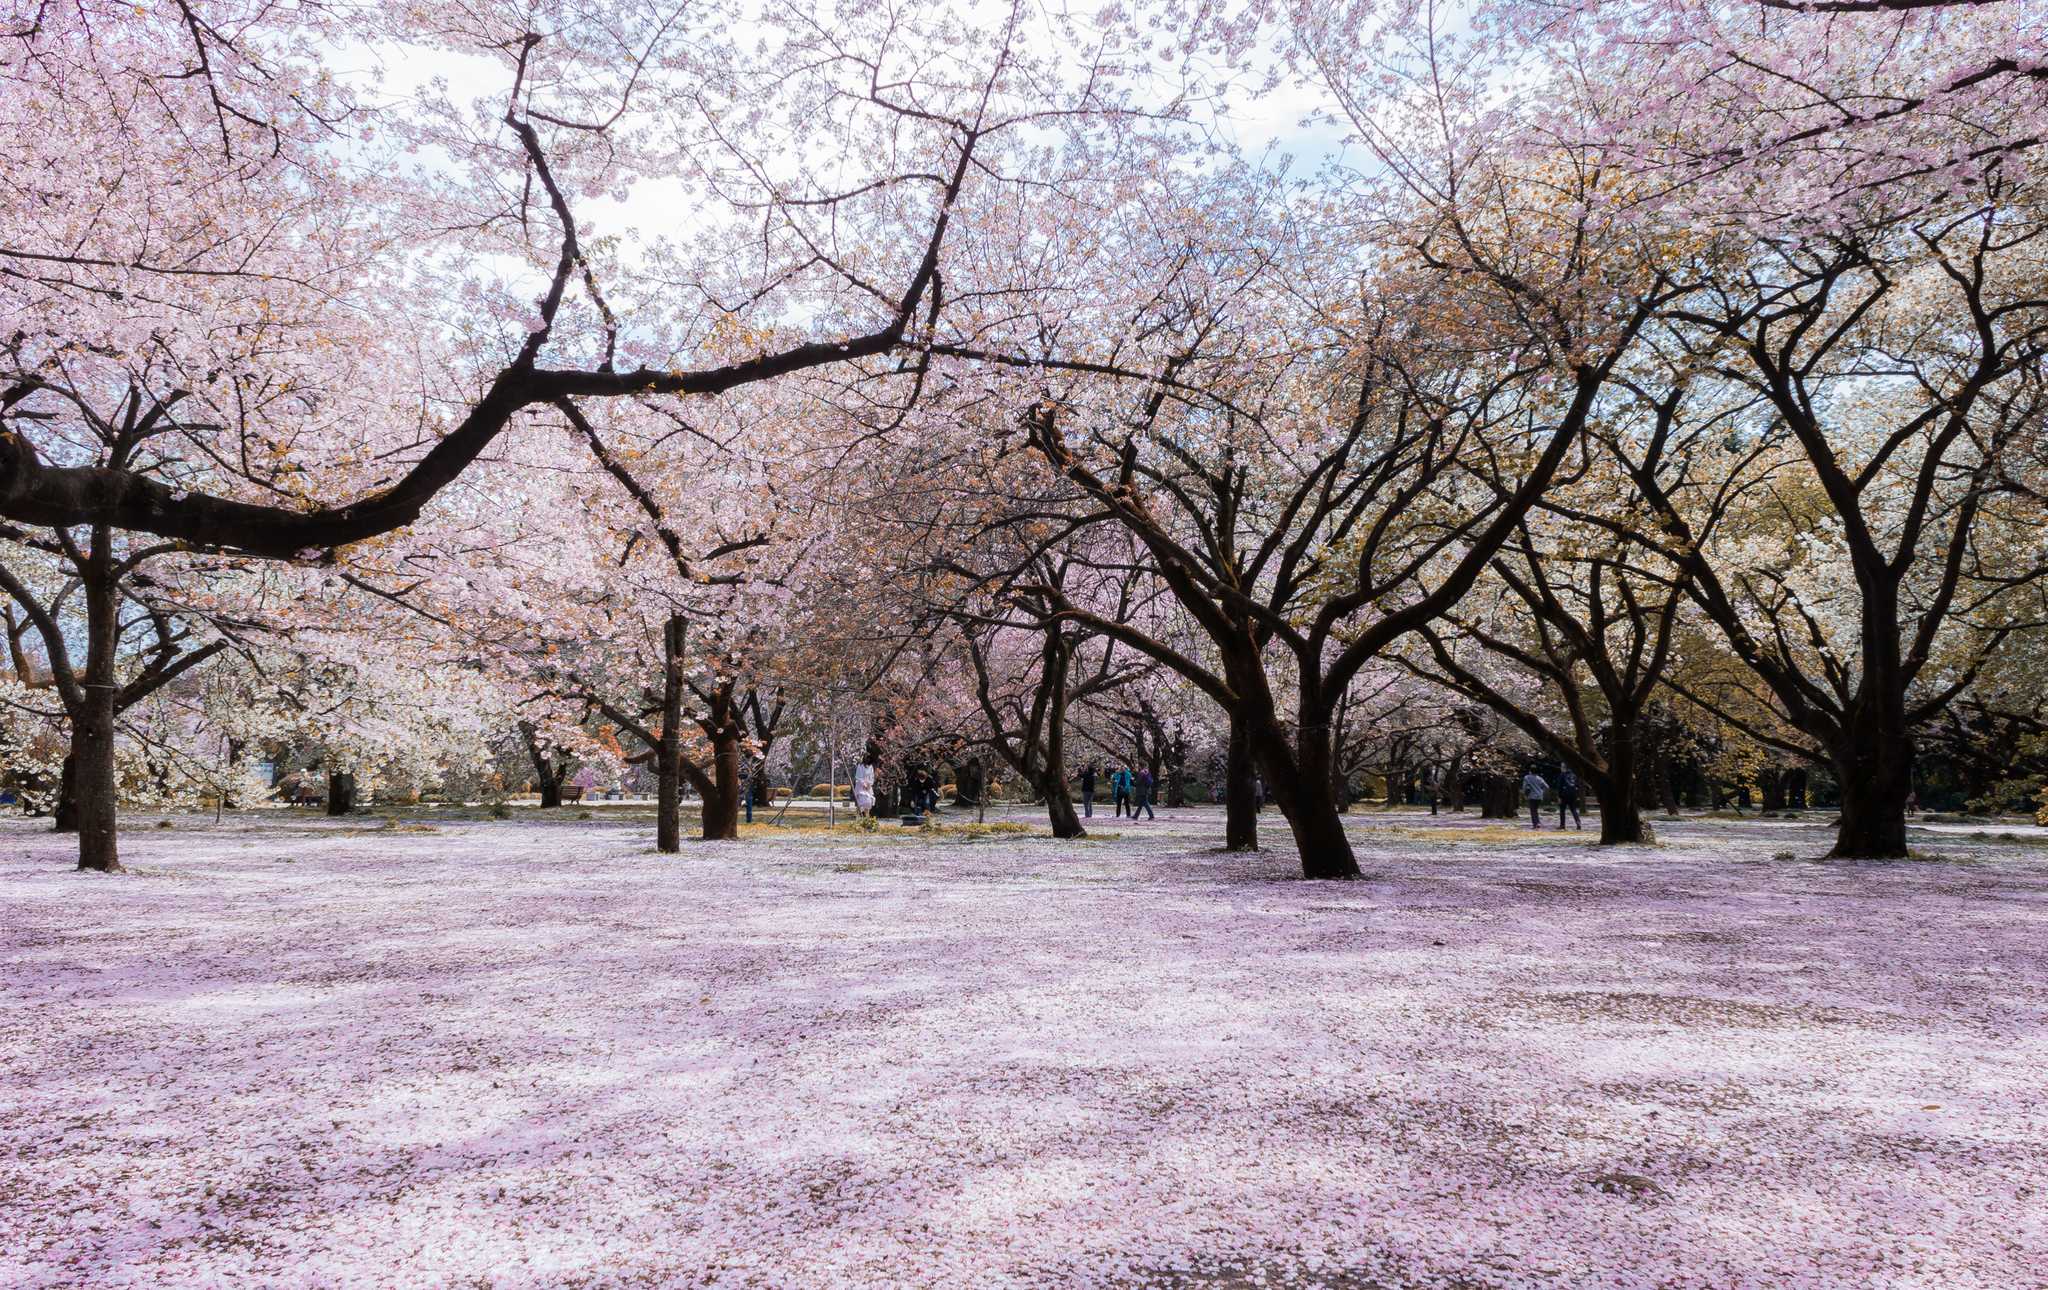 shinjuku gyoen national garden   sakura 10